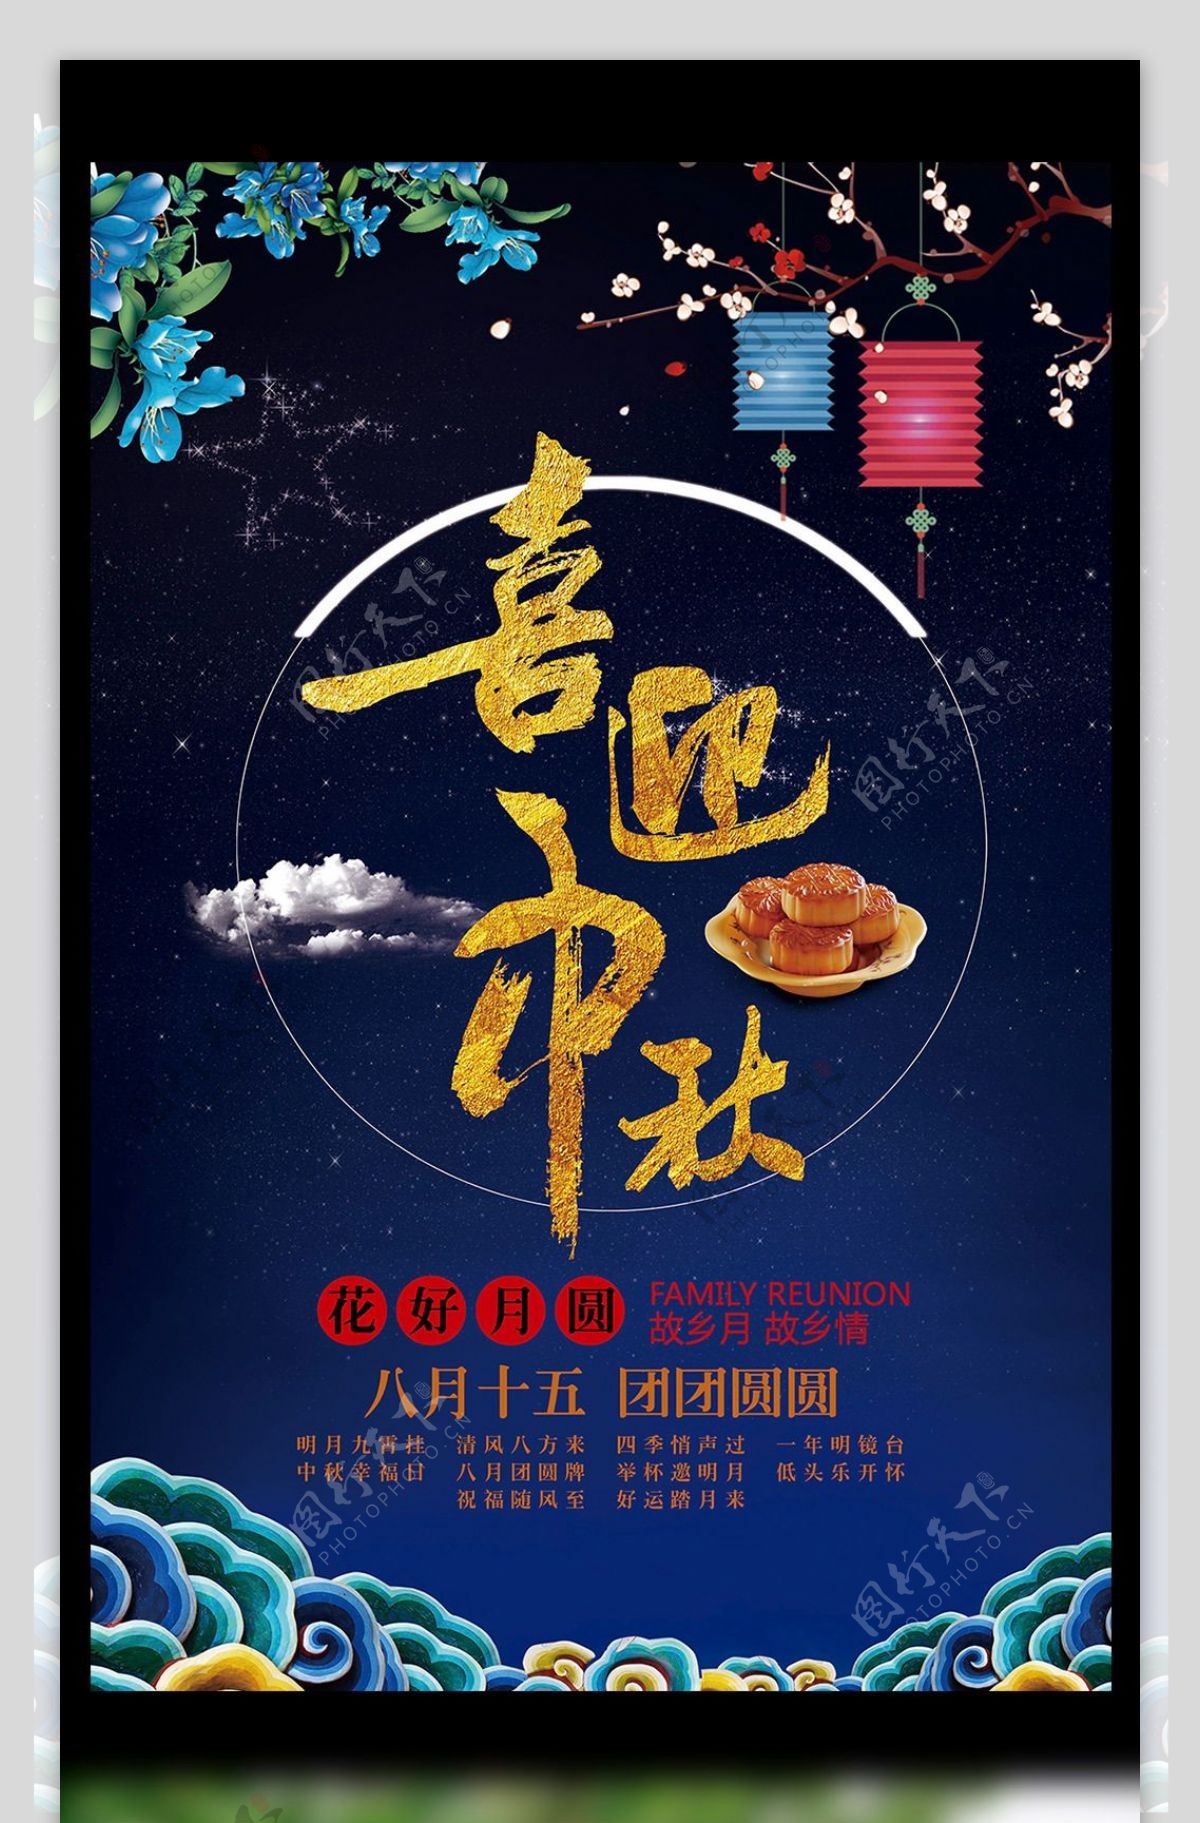 蓝色中国风传统节日中秋节喜迎中秋海报模板